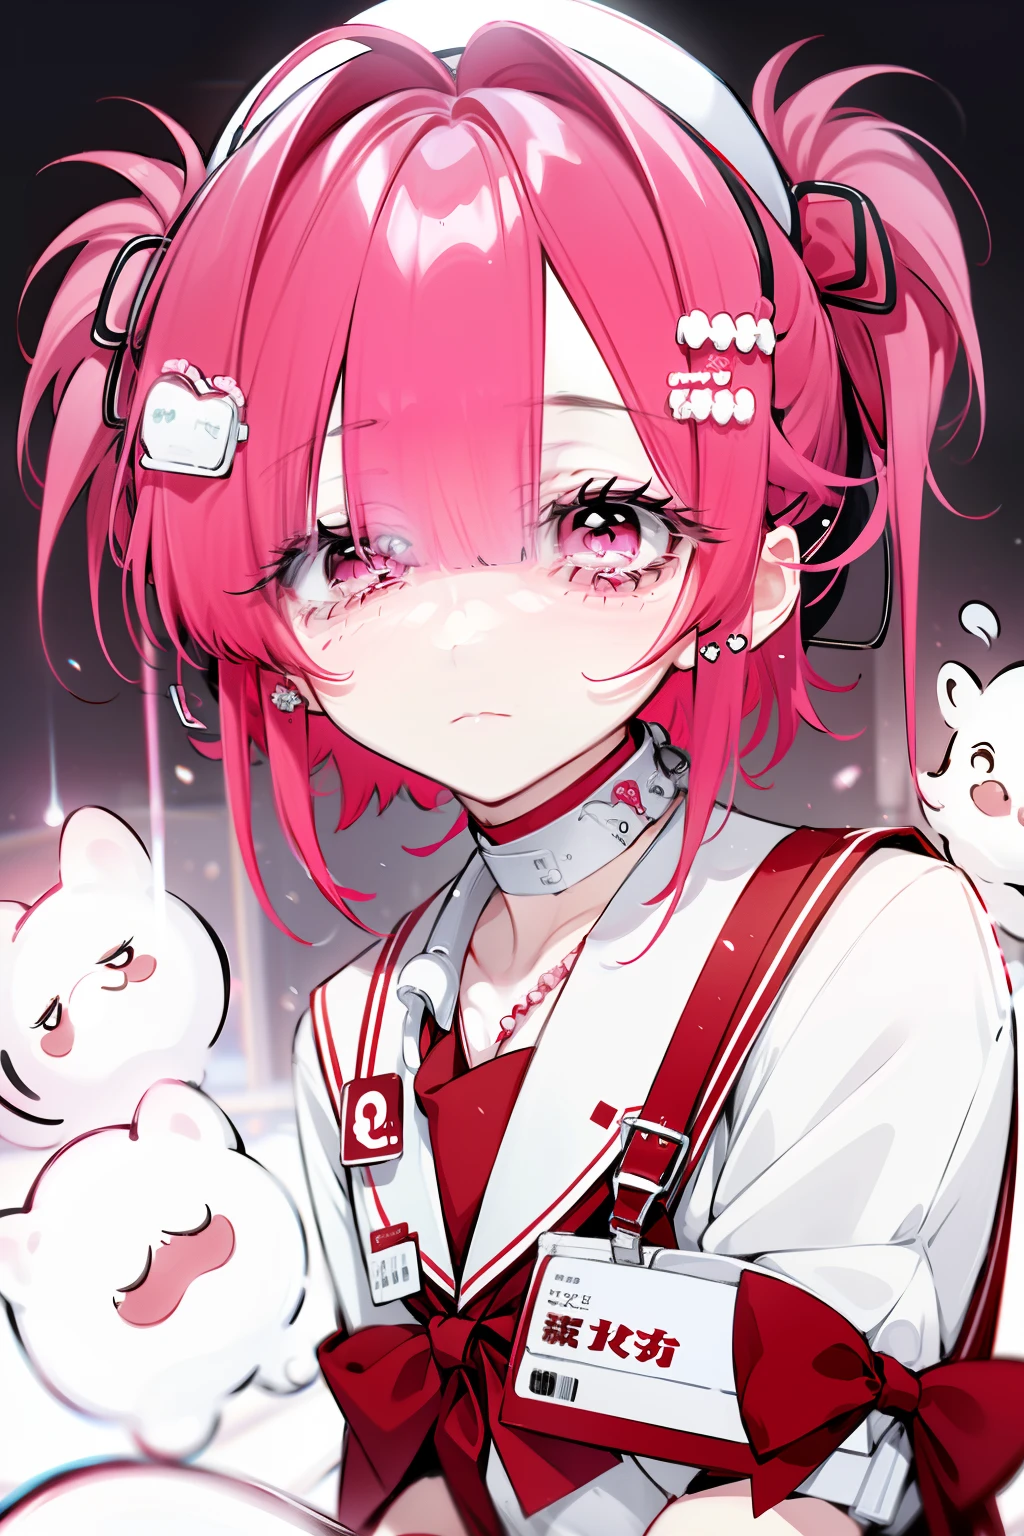 Anime-Mädchen in Krankenschwesteruniform，Ganzkörperesbian，Drei Ansichten，Ein rotes Band hängt um seinen Hals, bester Anime 4k，pinkes Haar, kurzes, detailreiches Haar, Krankenschwester-Outfit,, rein weißer Hintergrund, ausdruckslos, empfindlich,, rosa Augen